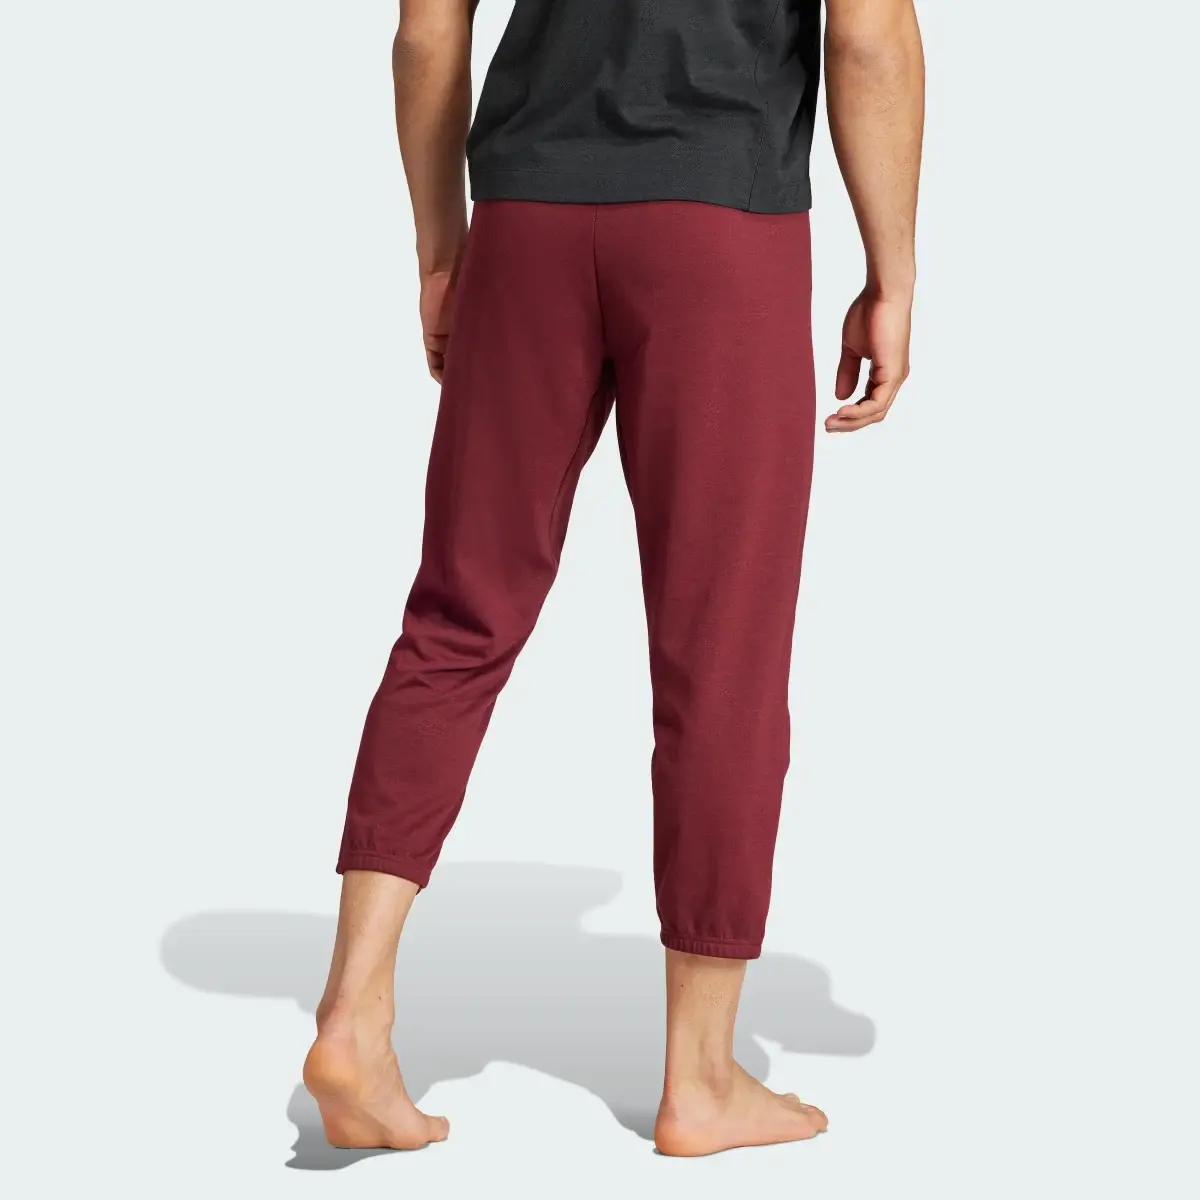 Adidas Spodnie Yoga Training 7/8. 2